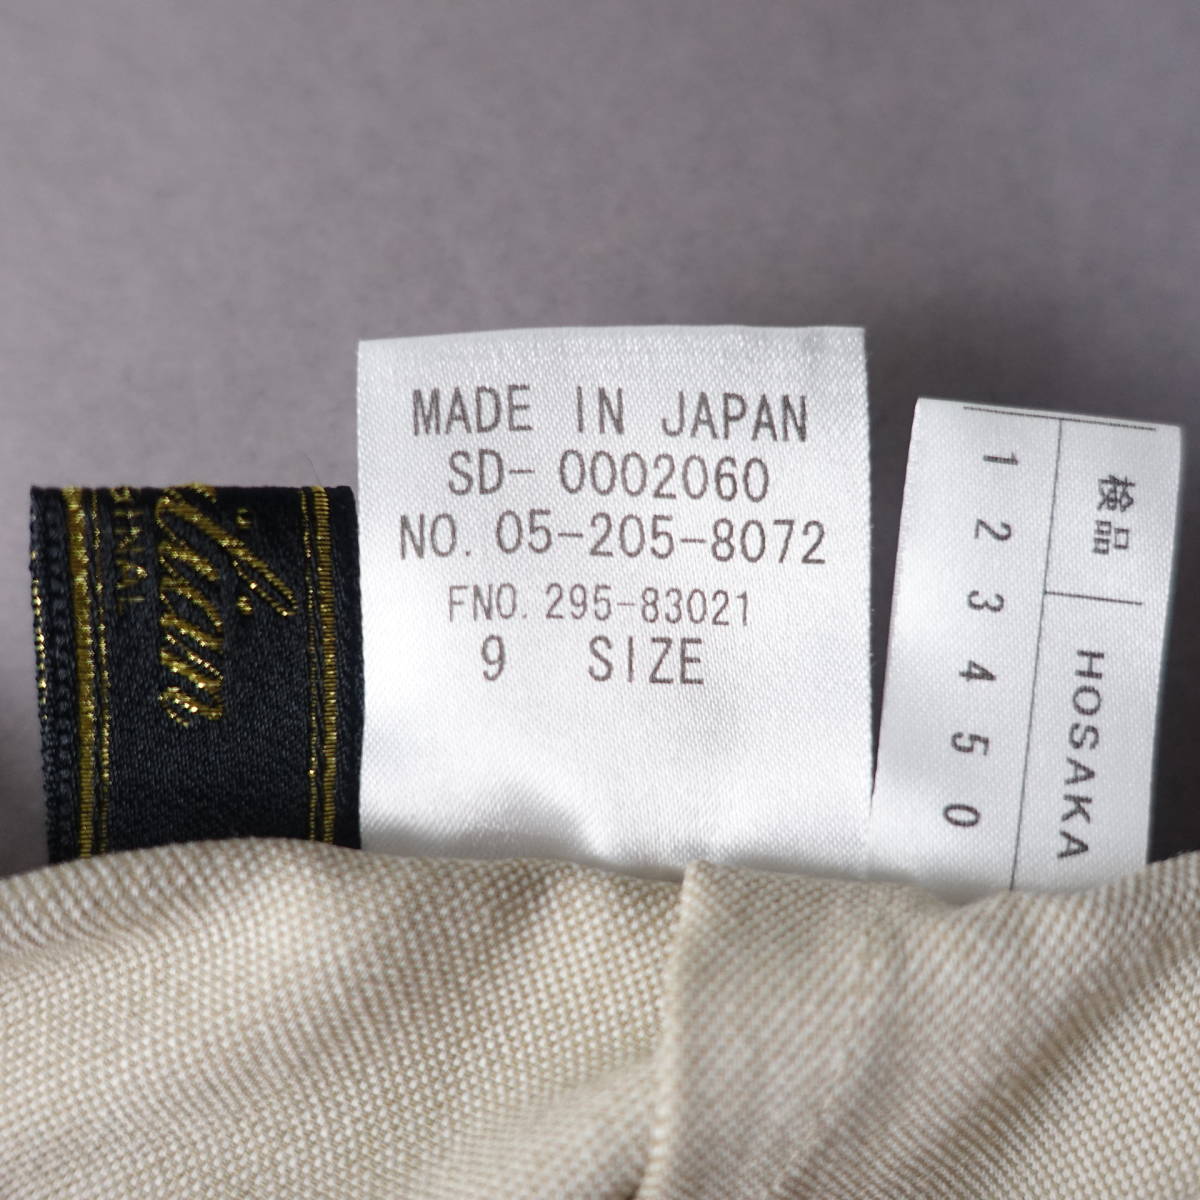  beautiful goods *Leilian/ Leilian /9/ made in Japan /linen./ waist rubber pants / beige / slacks / bottoms / lady's 